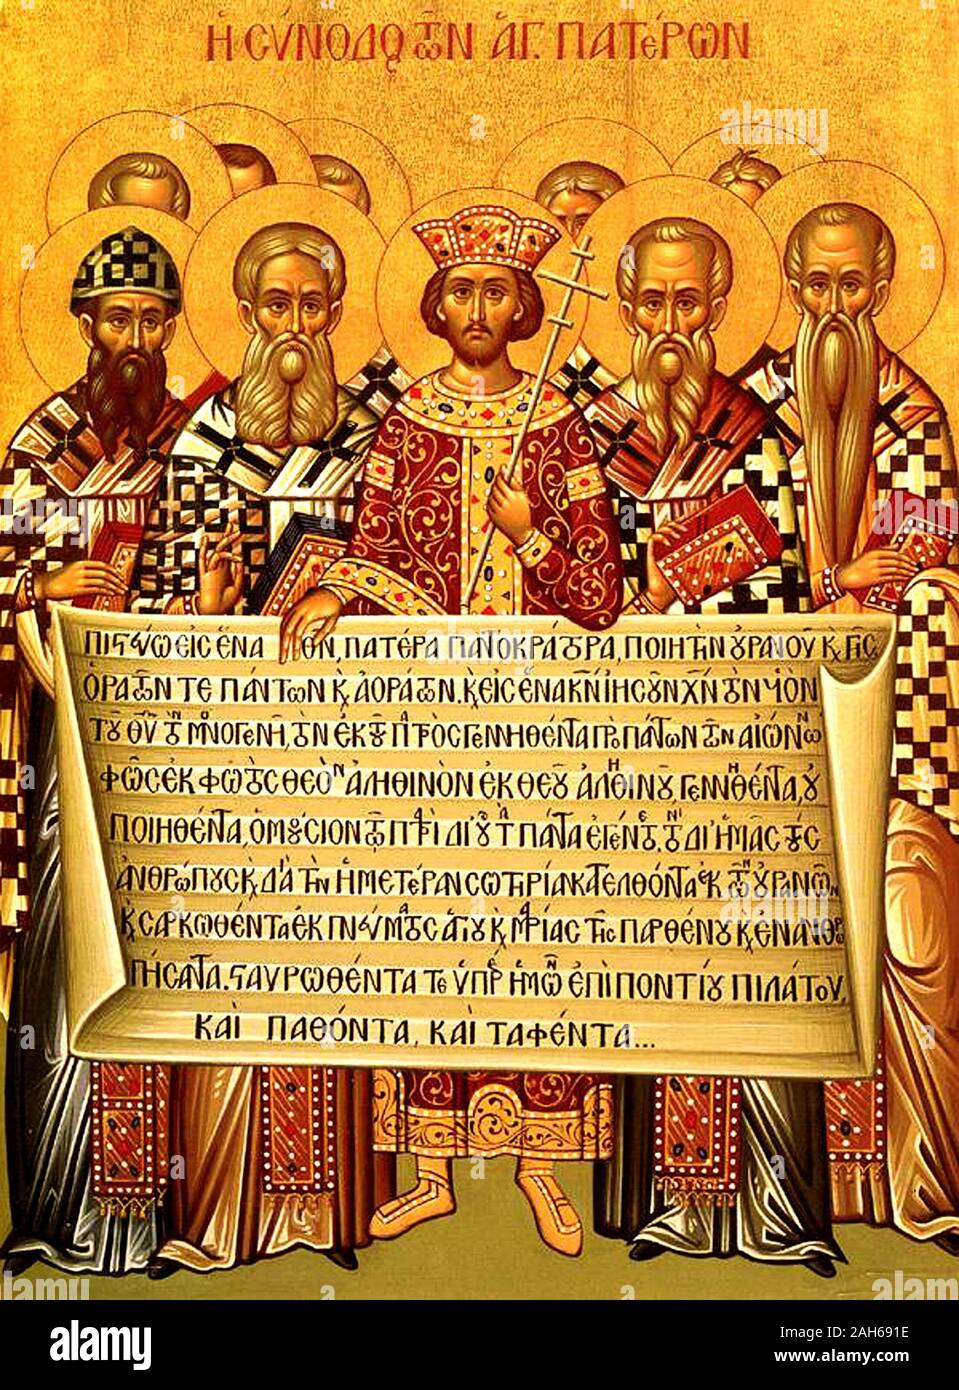 Icône représentant l'empereur Constantin, accompagné par les évêques du premier Concile de Nicée (325), maintenant le Credo de 381 Niceno-Constantinopolitan Banque D'Images